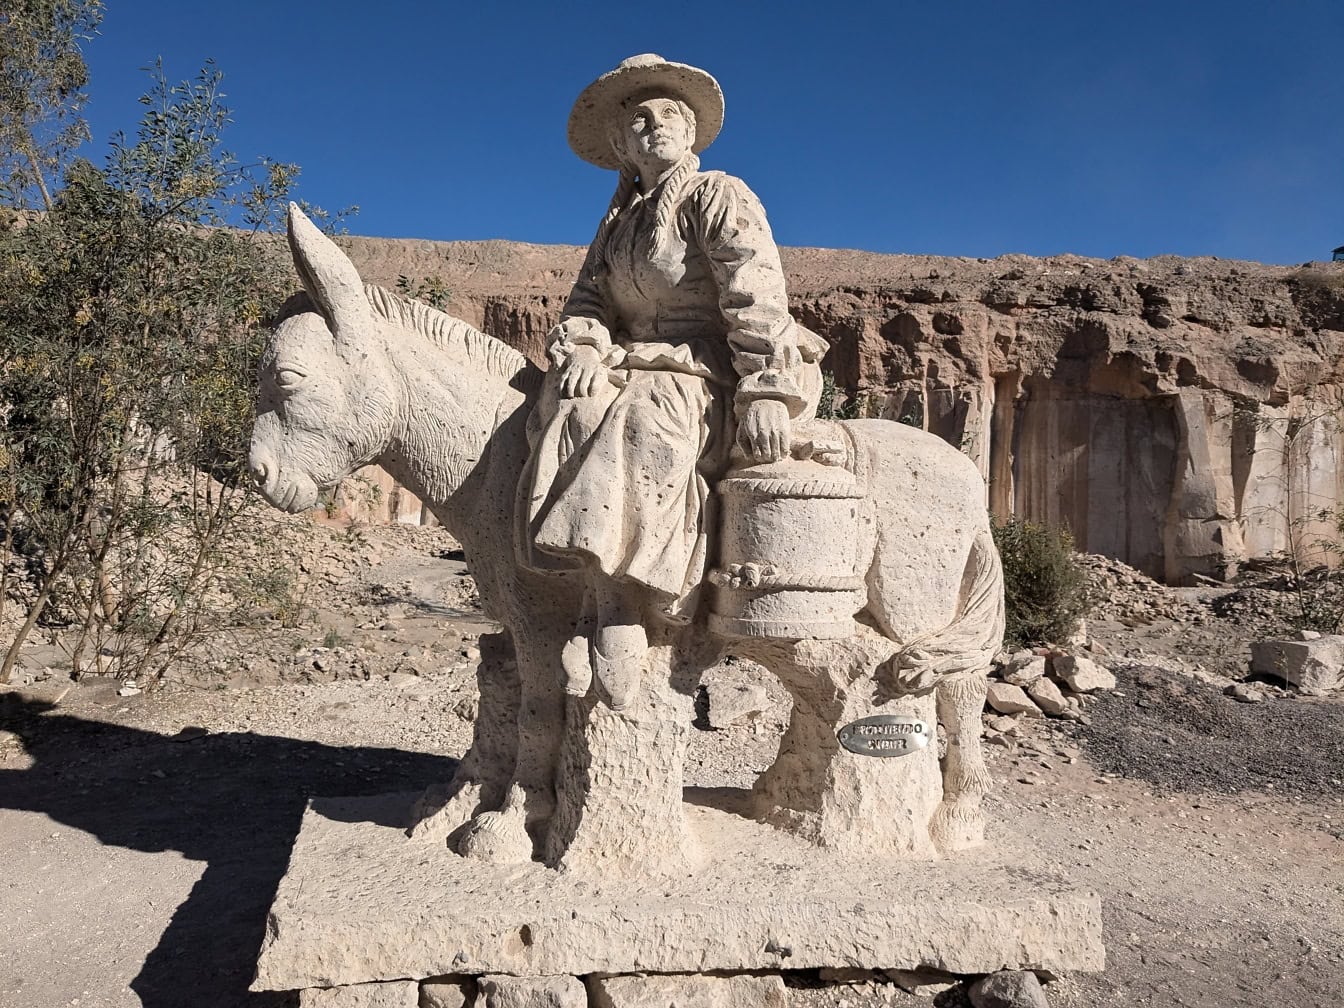 Szamárháton ülő férfi szobra a Sillar útvonalon, a Culebrillas-kanyon közelében, Peruban